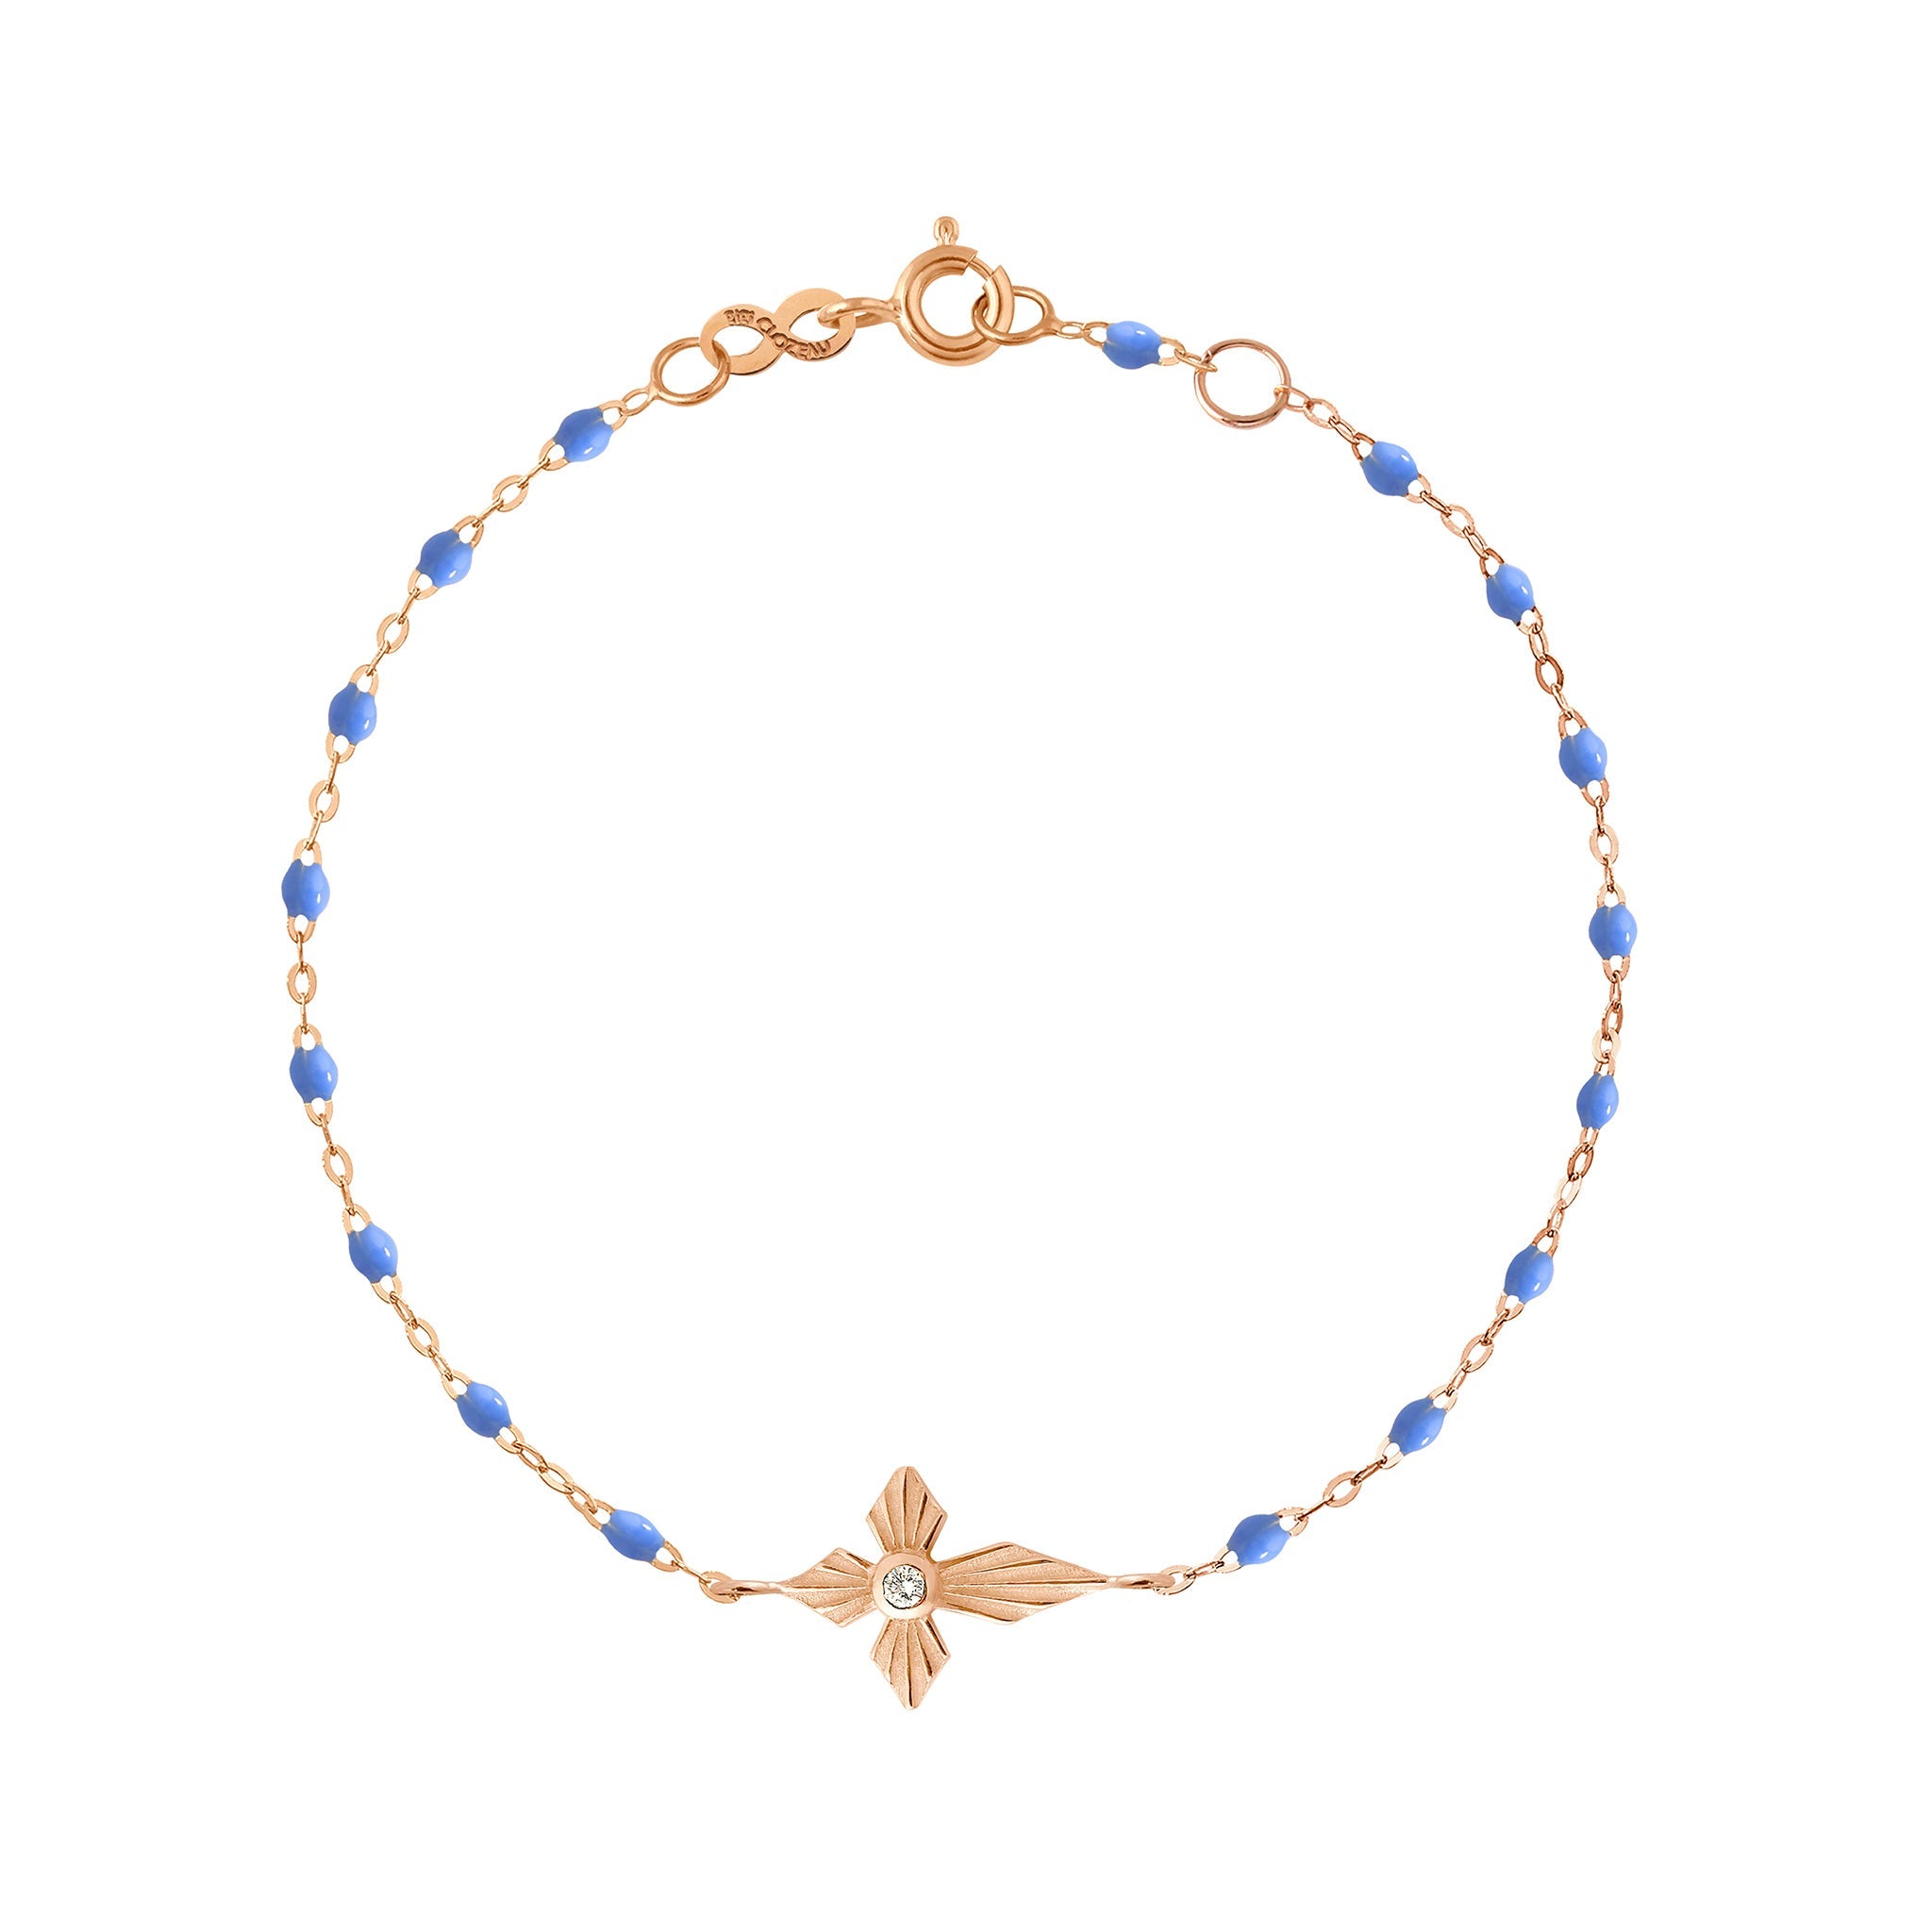 Gigi Clozeau - Bracelet bleuet Croix Lumière diamants, or rose, 17 cm